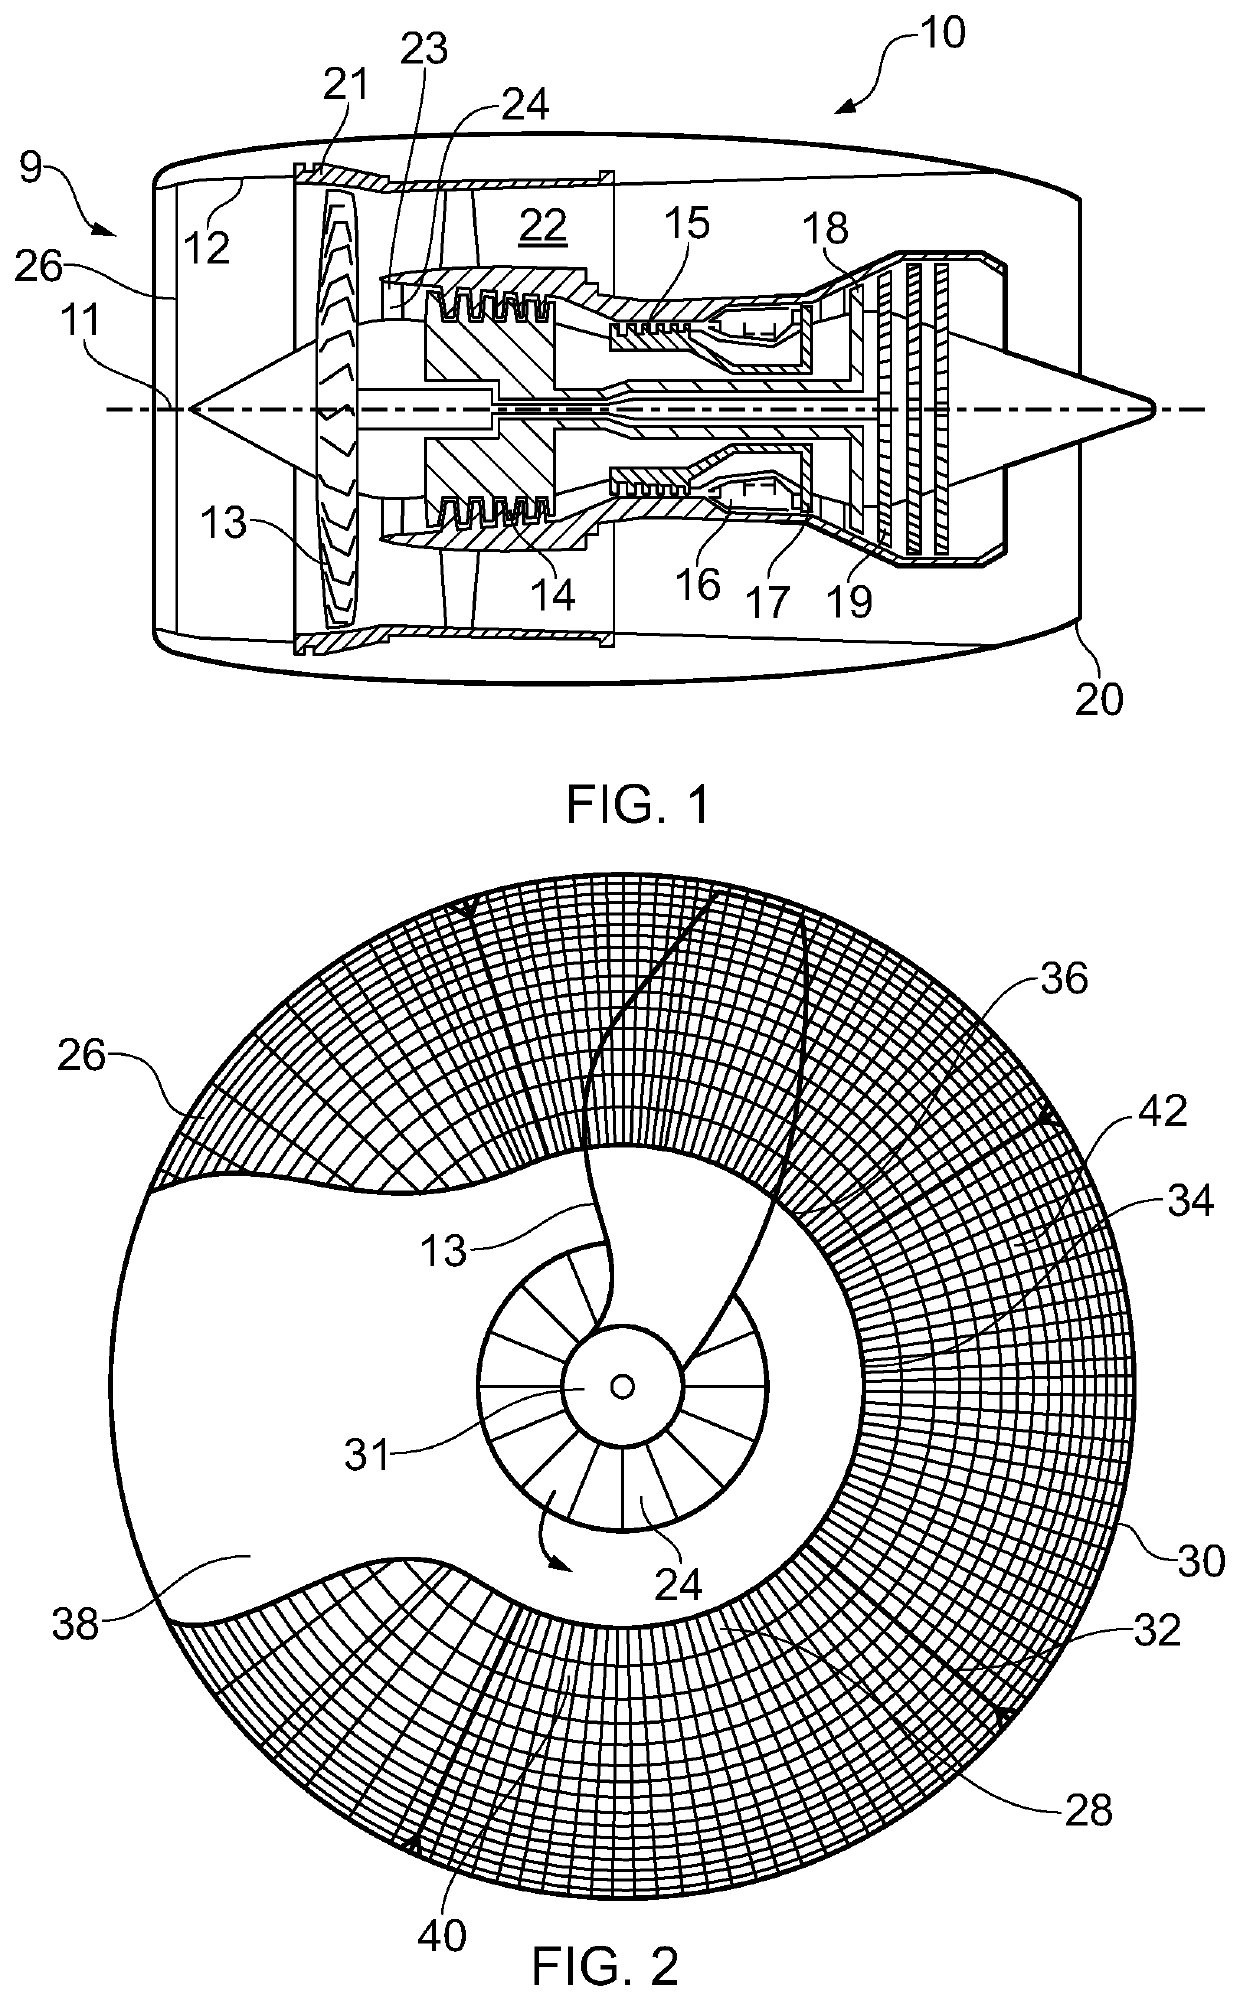 Gas turbine engine arrangement